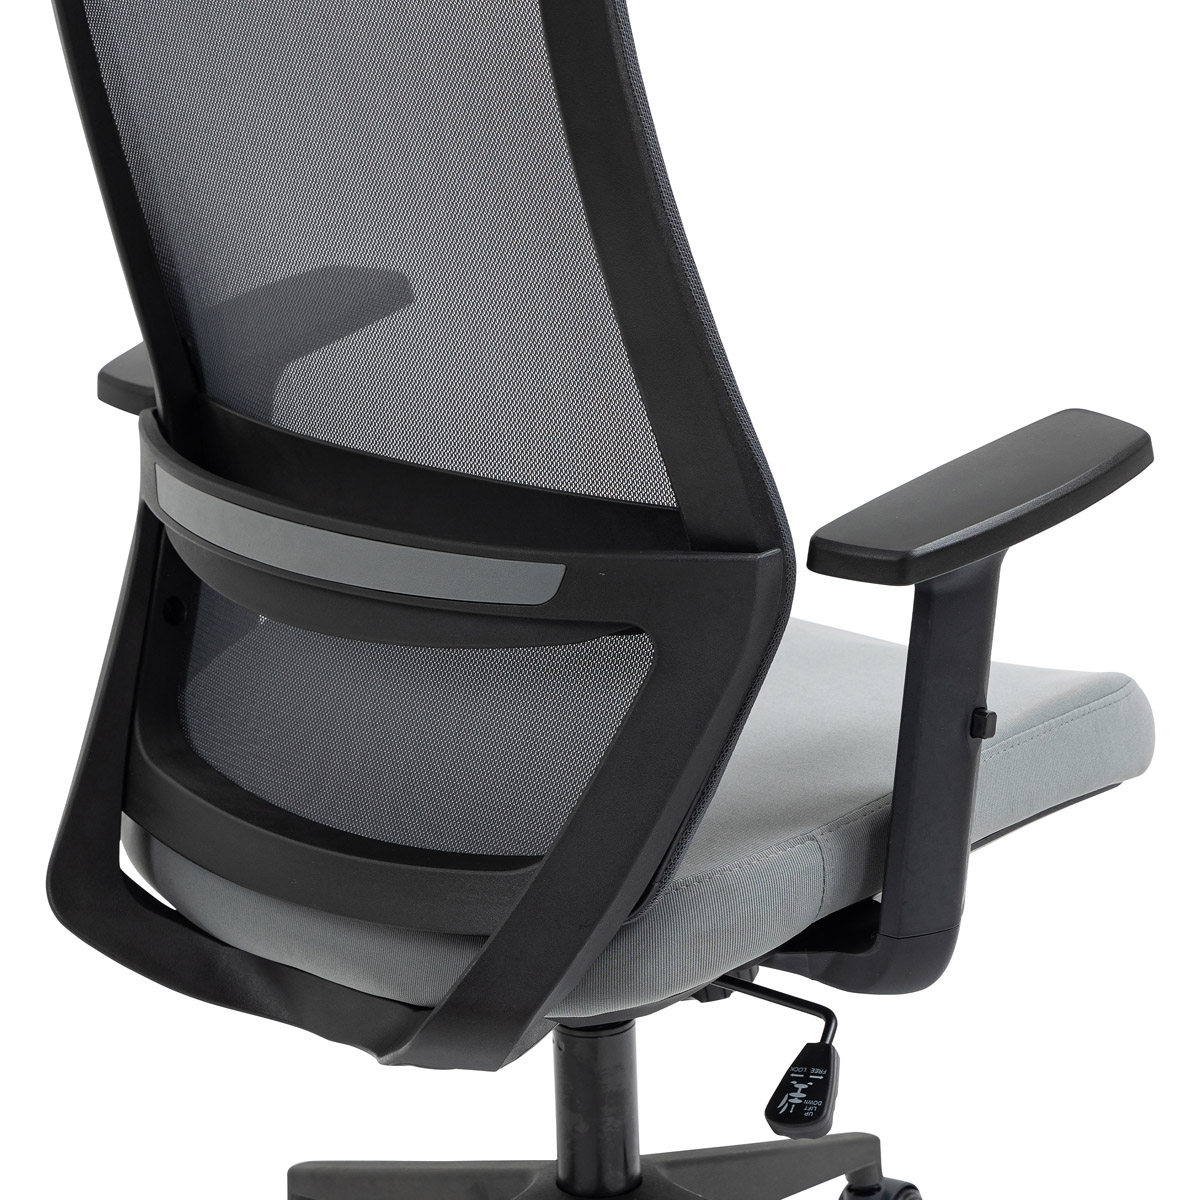 Kancelářská židle, černý plast, šedá látka, 1D područky, kolečka pro tvrdé podlahy